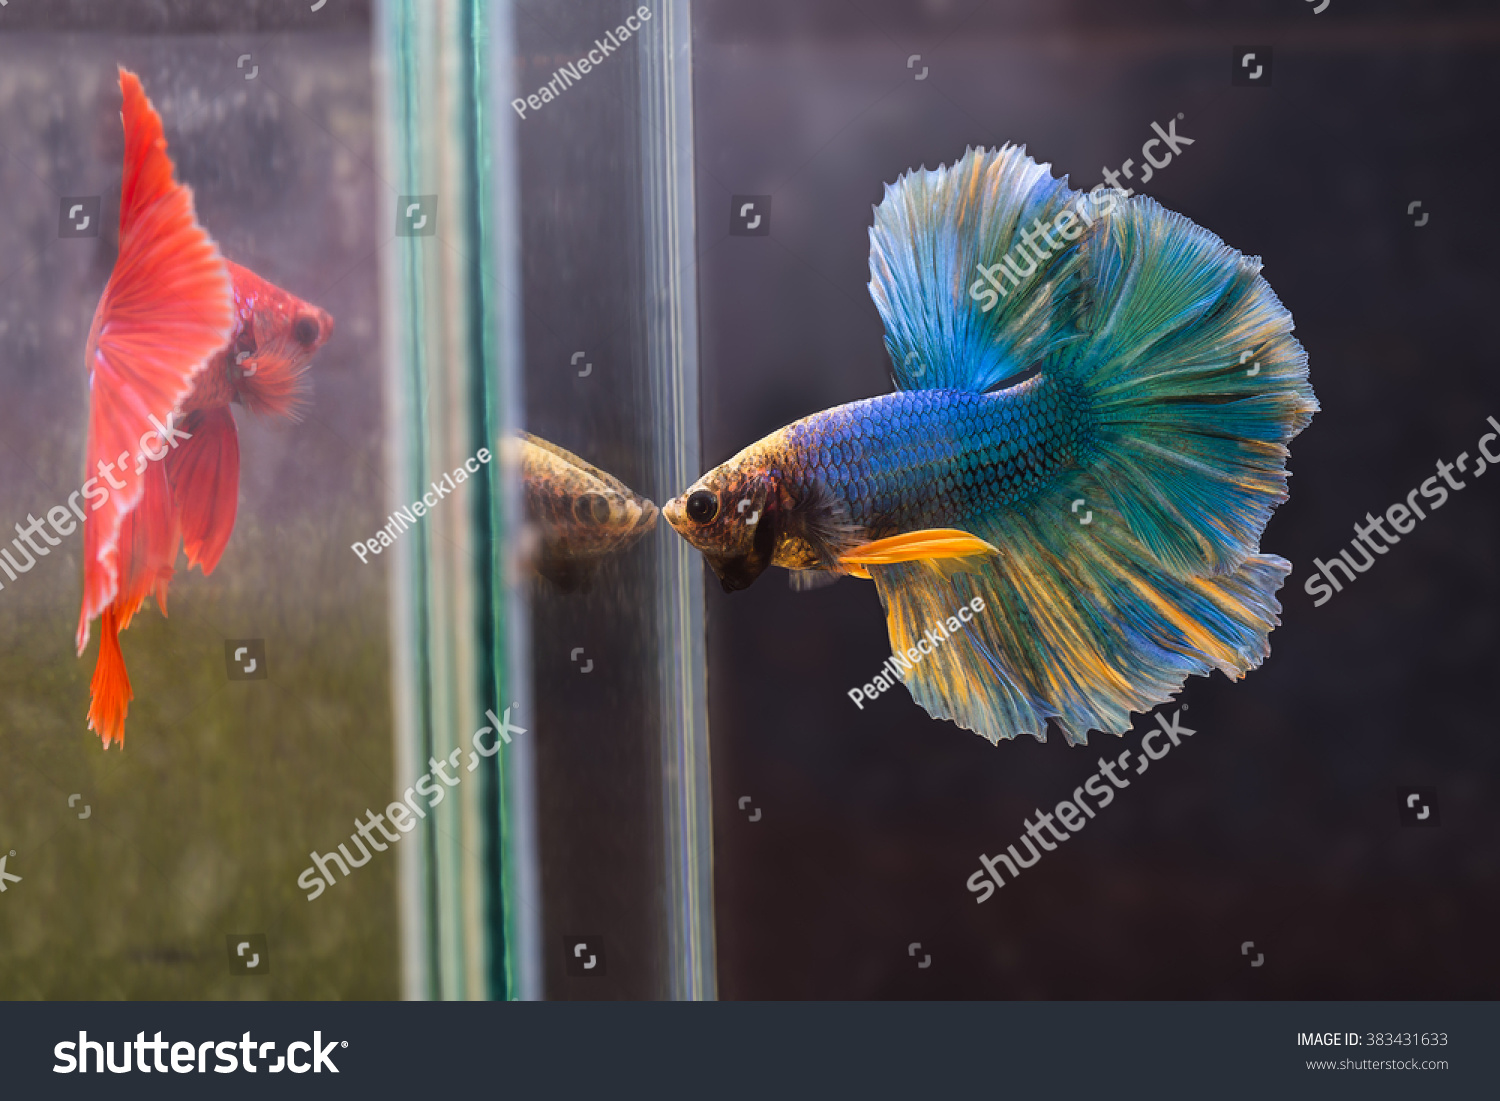 фото рыбок петушков самцов и самок